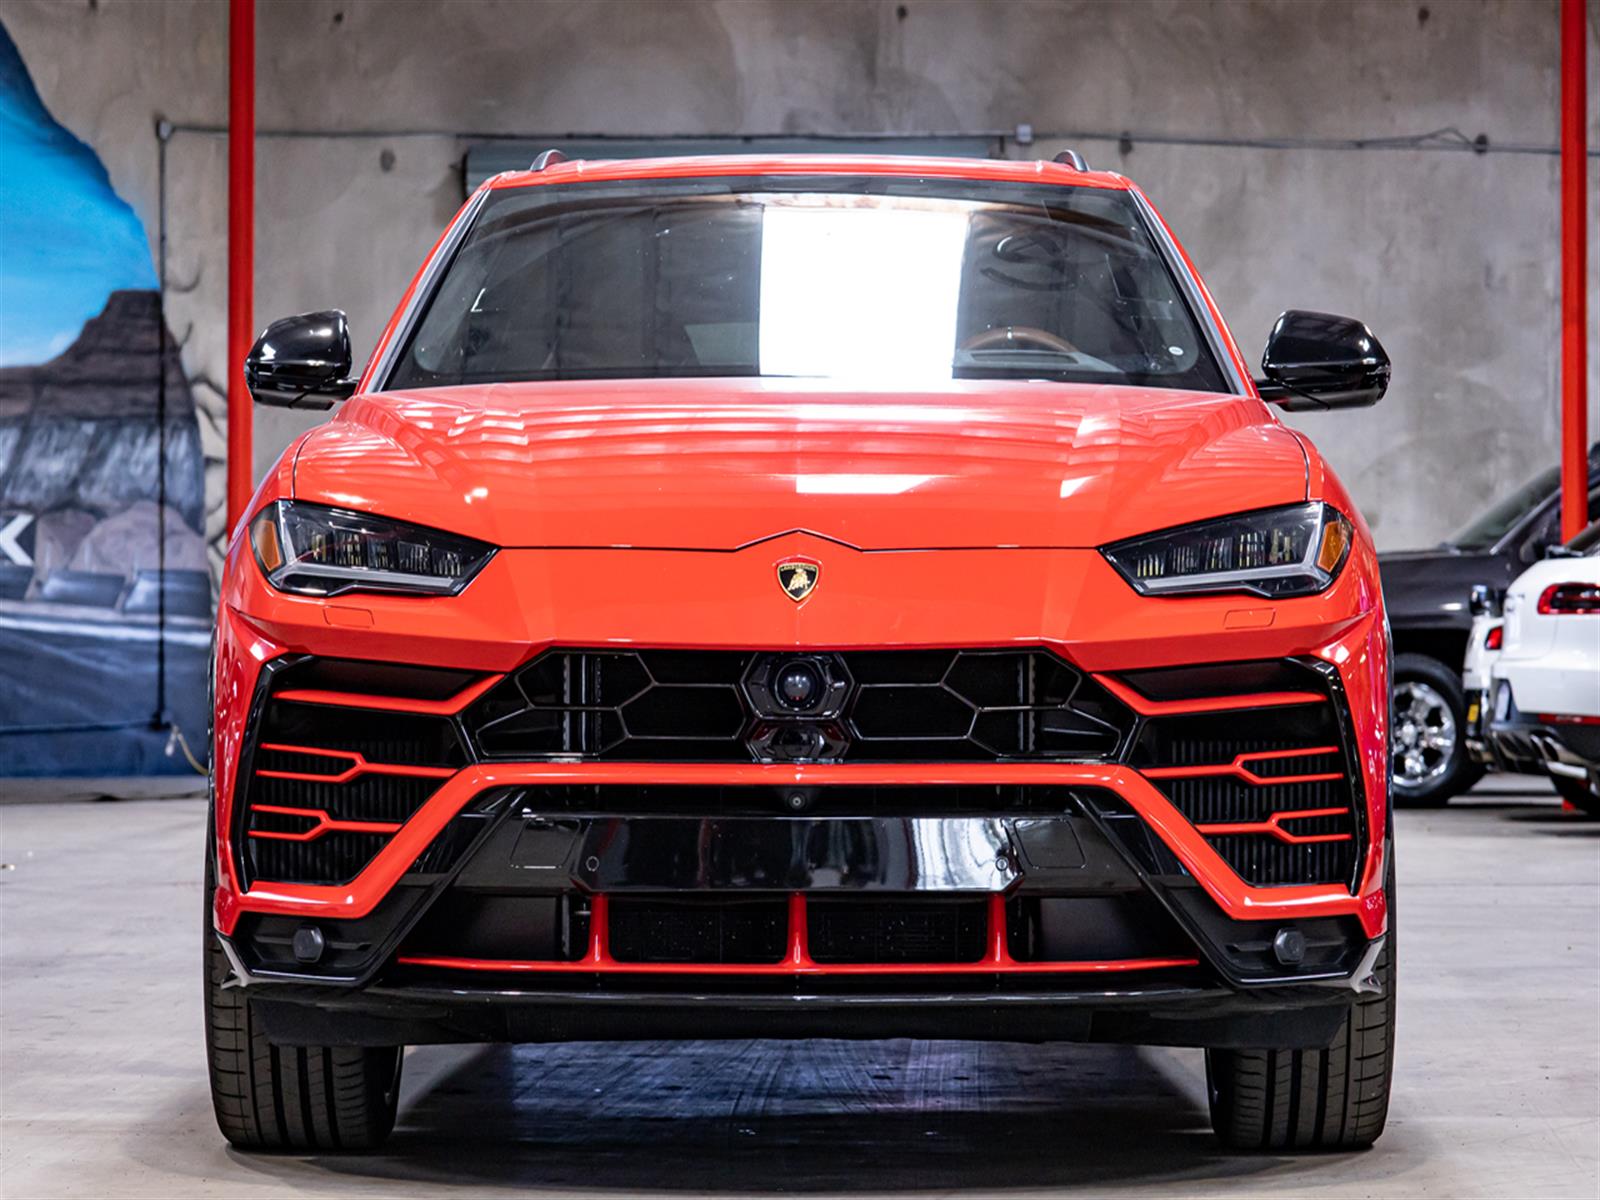  2019 Lamborghini Urus  Crossover